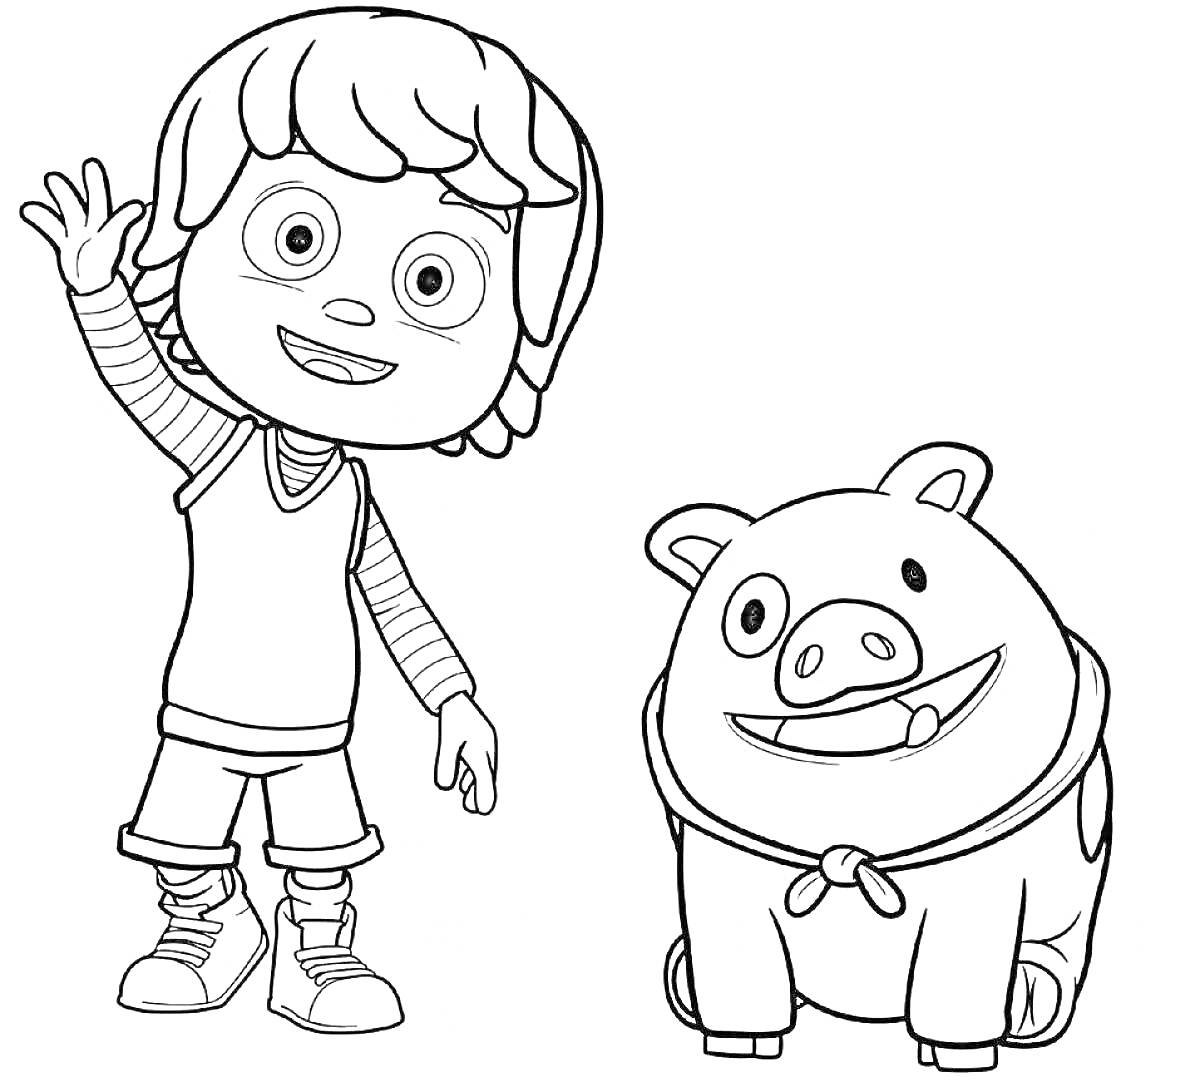 Мальчик в полосатой футболке и шортах с рукой вверх, рядом веселая свинка с повязкой на шее